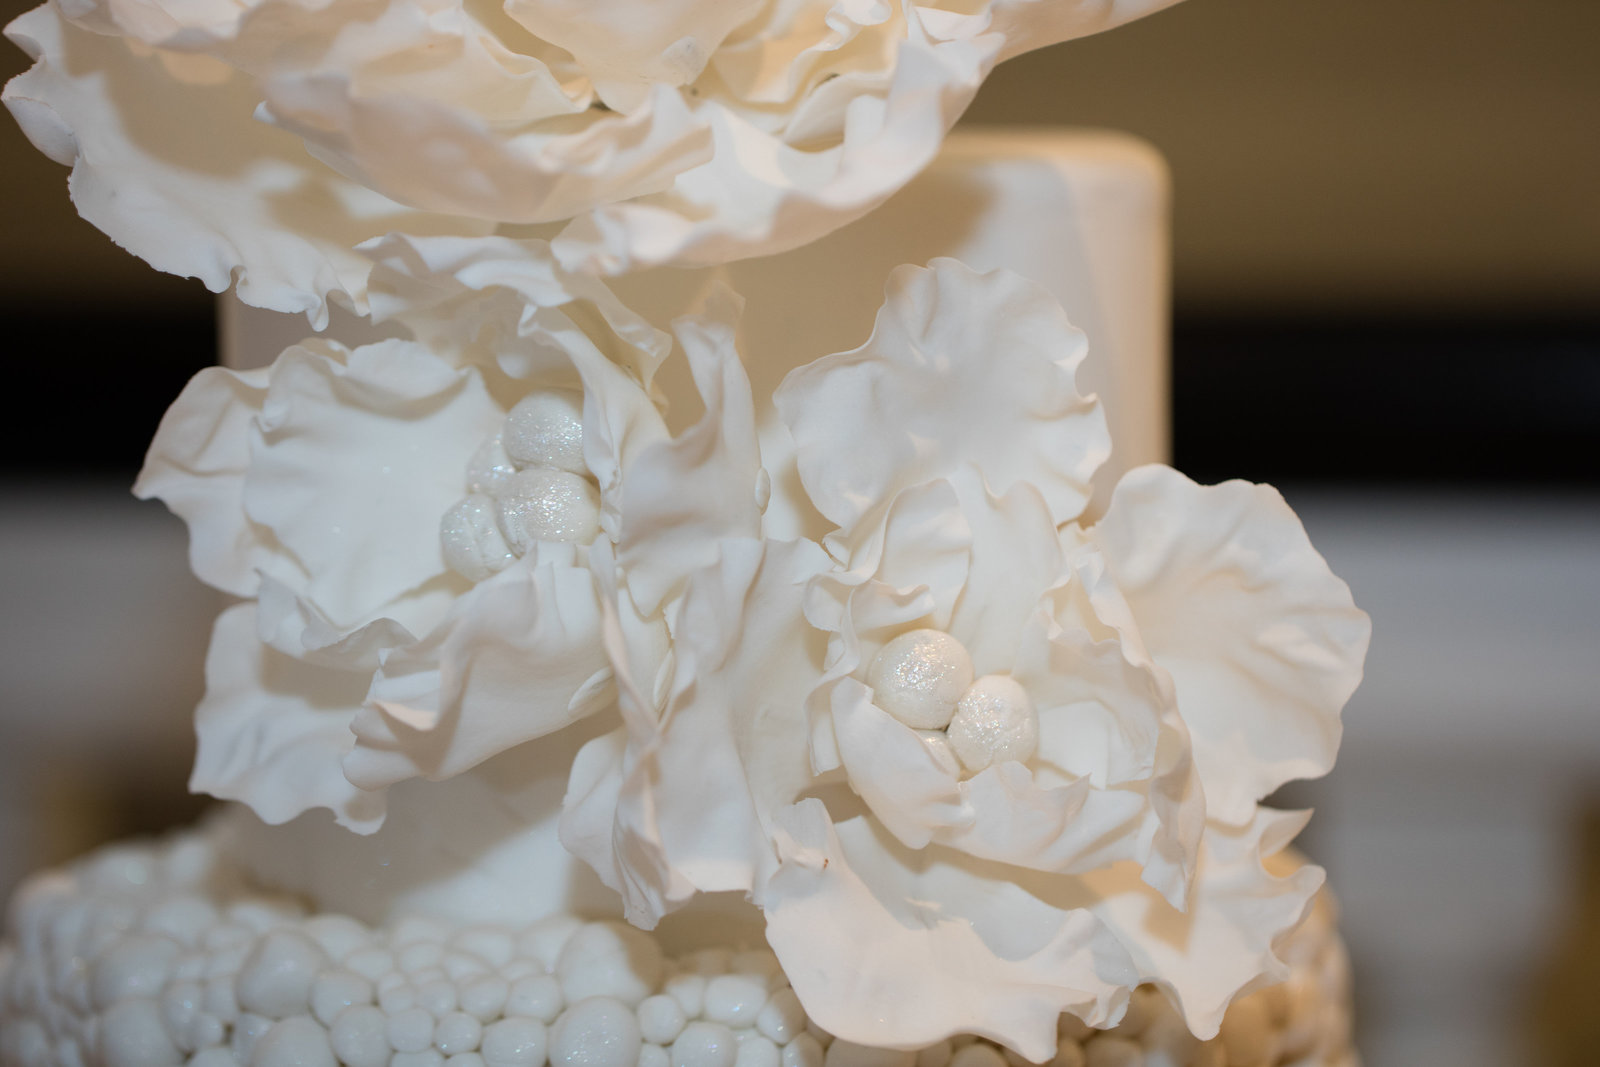 Blooming flower wedding cake top